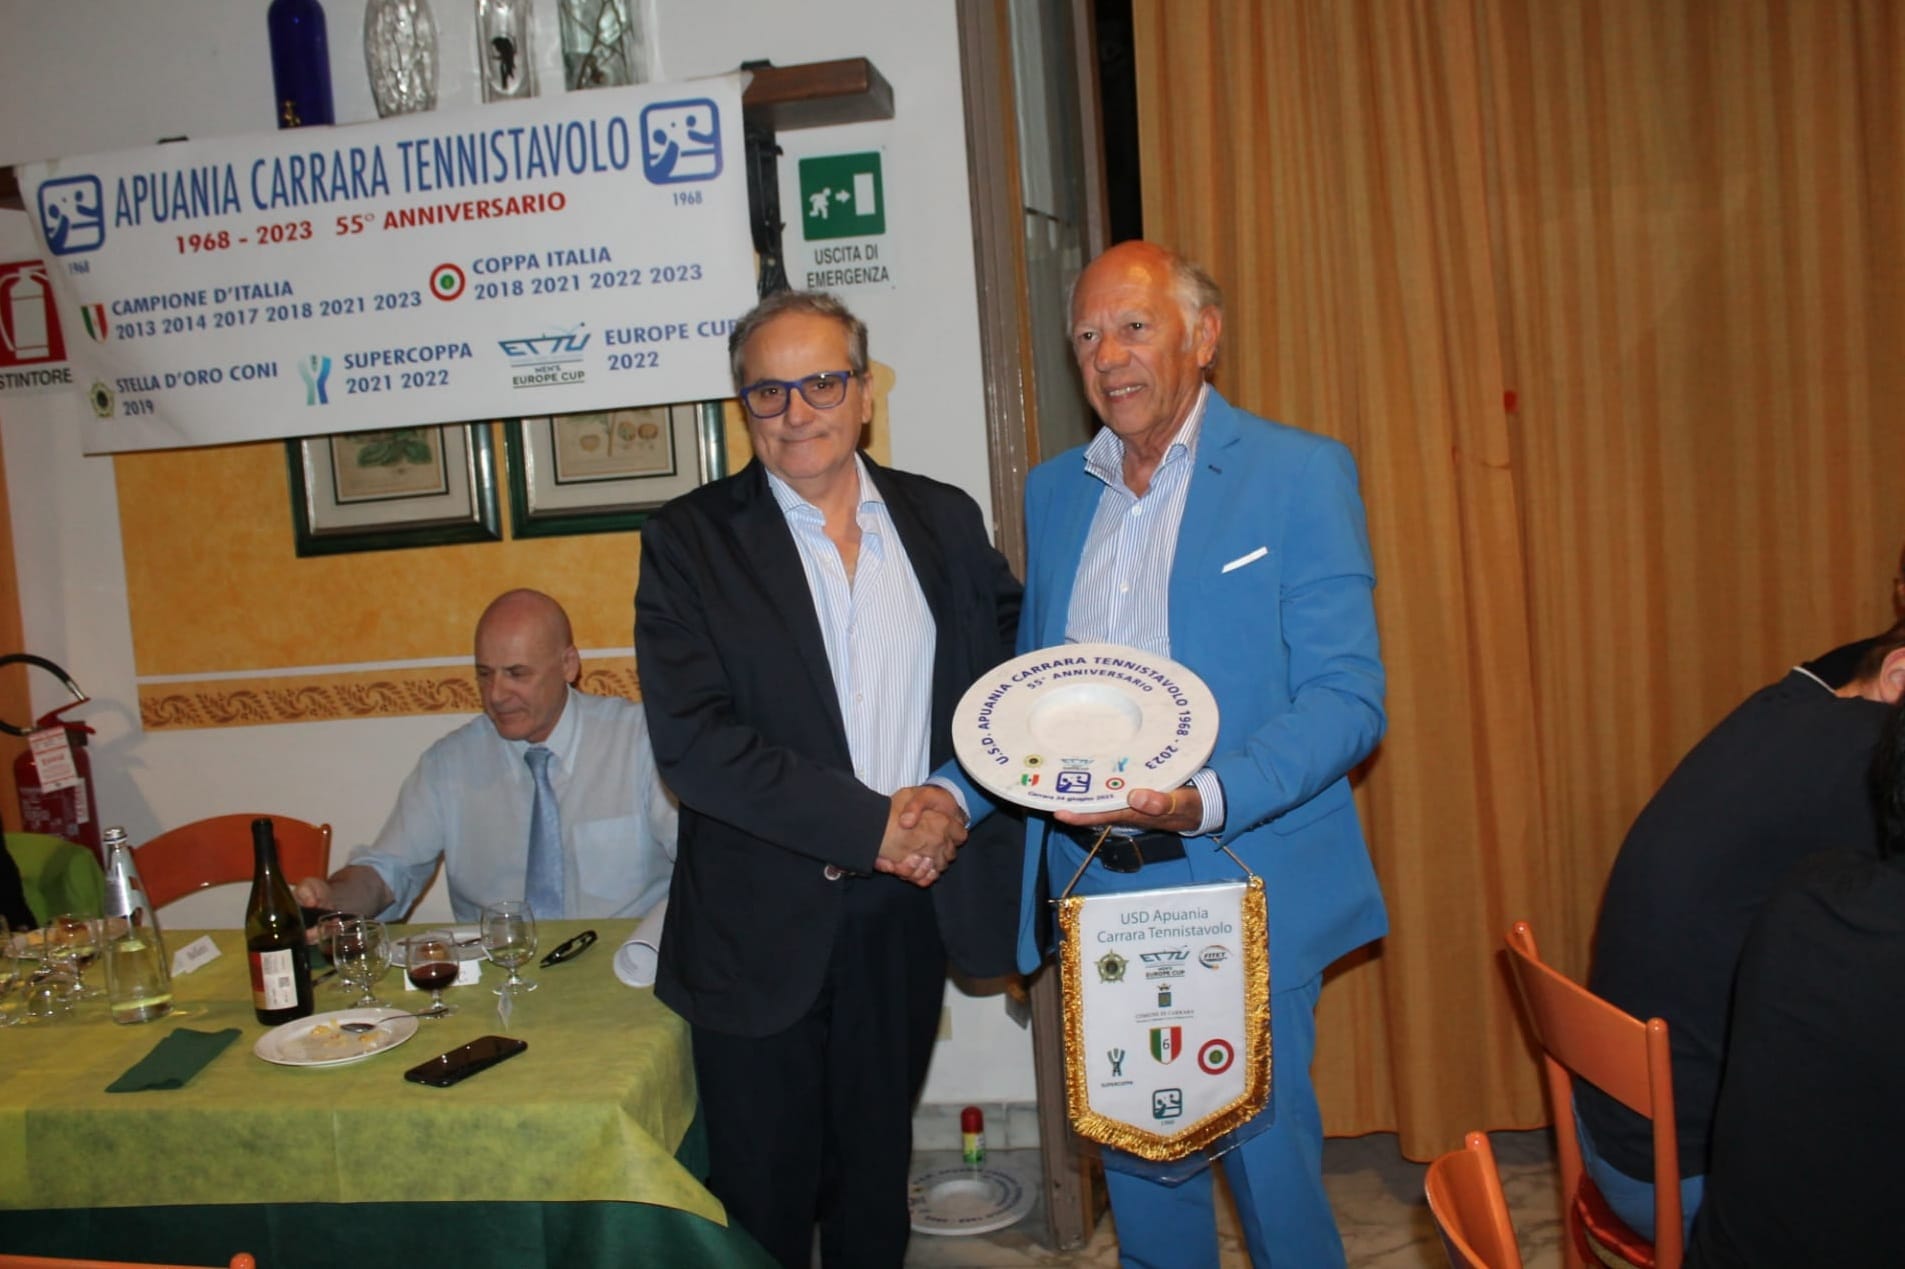 Apuania Carrara festa per i 55 anni premiazione presidente Di Napoli